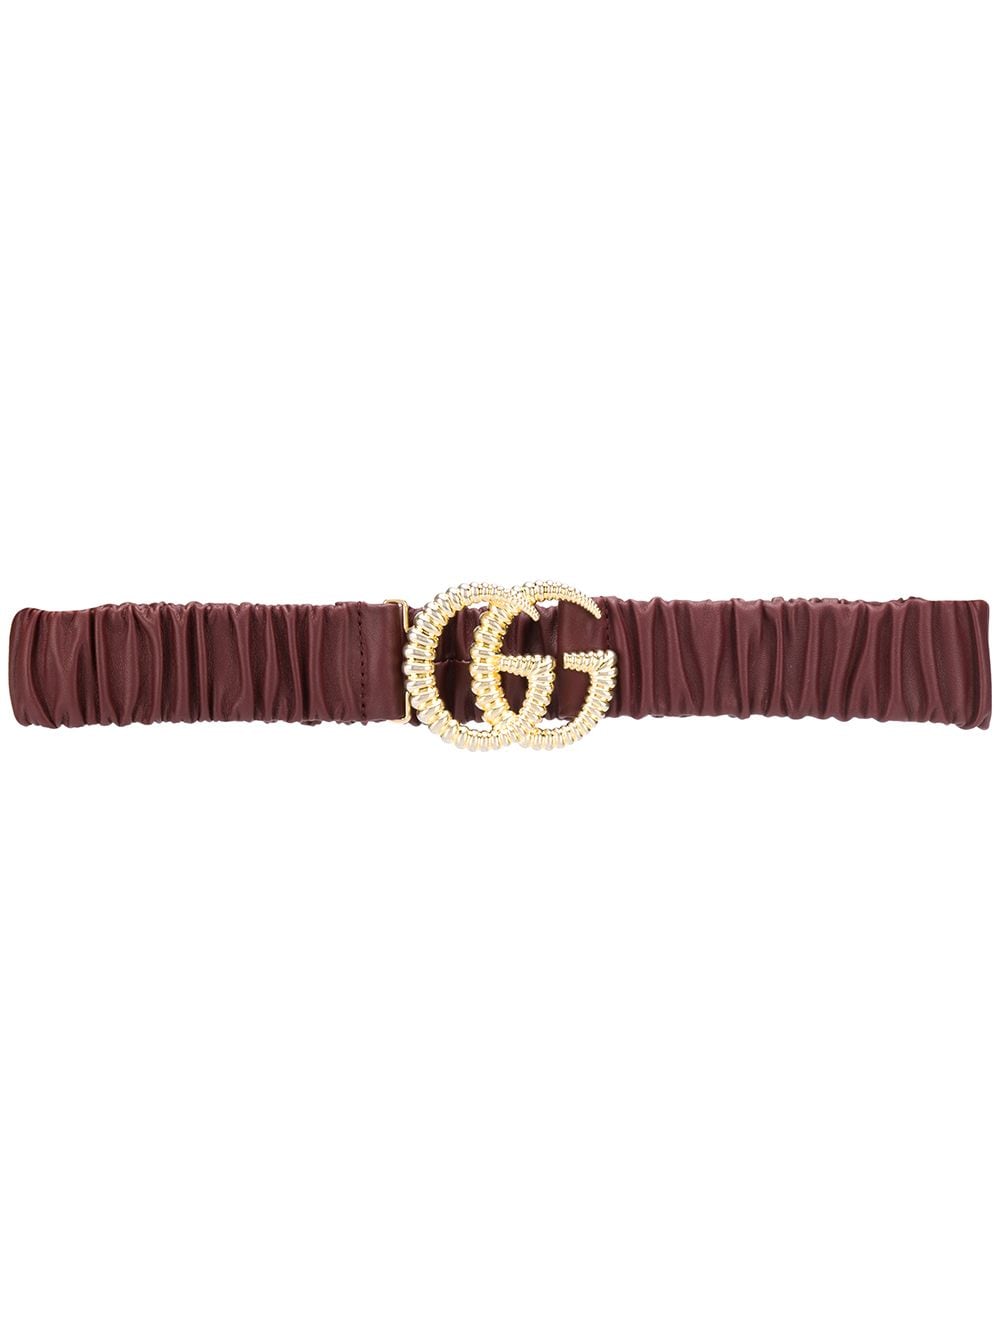 фото Gucci ремень с пряжкой-логотипом GG